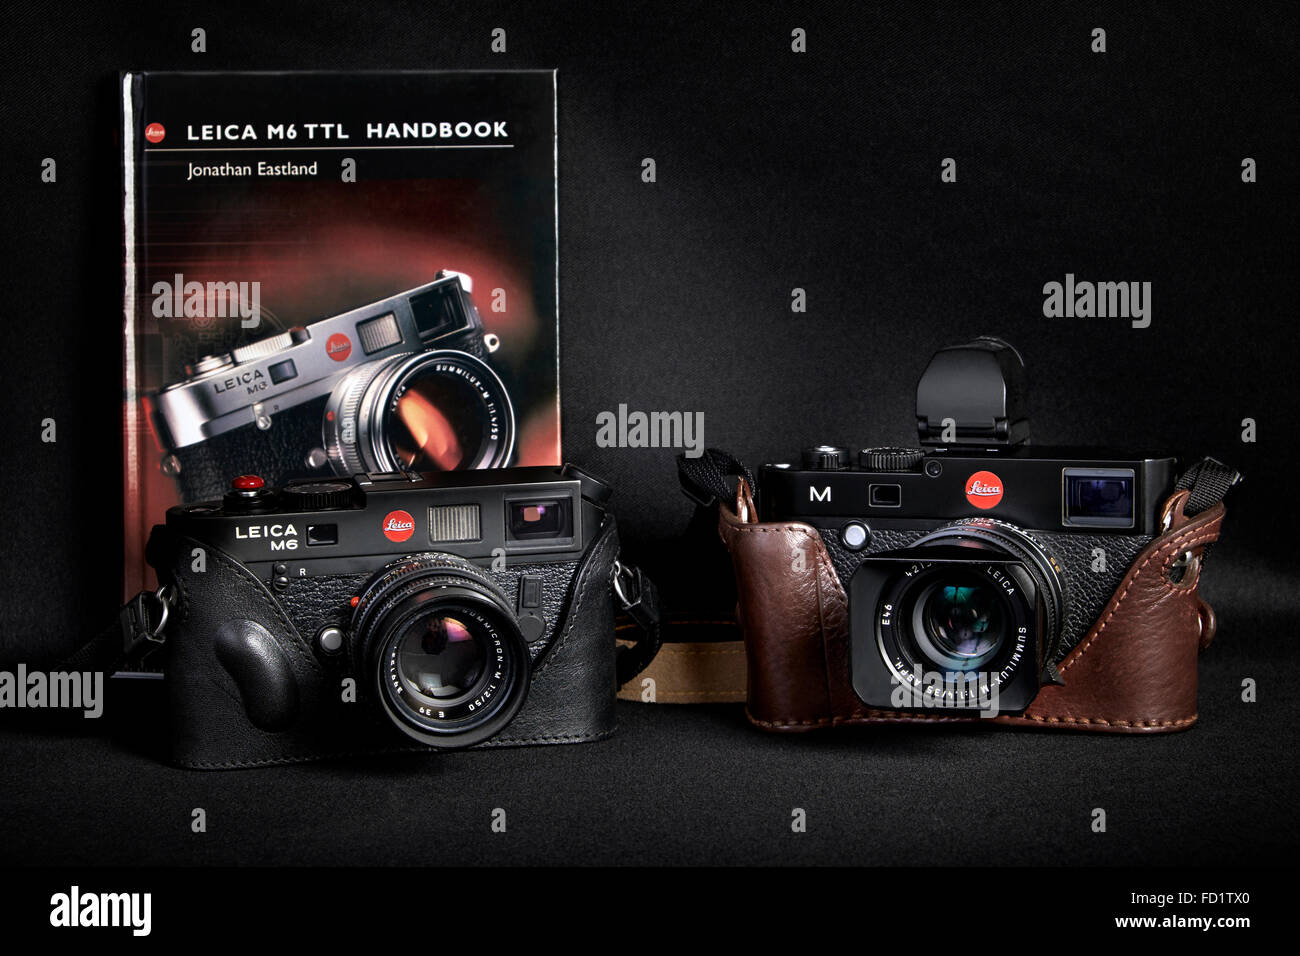 Appareil photo Leica. Appareil photo numérique Leica M6 TTL 35 mm vintage rangefinder et contrepartie numérique Leica M 240 Banque D'Images